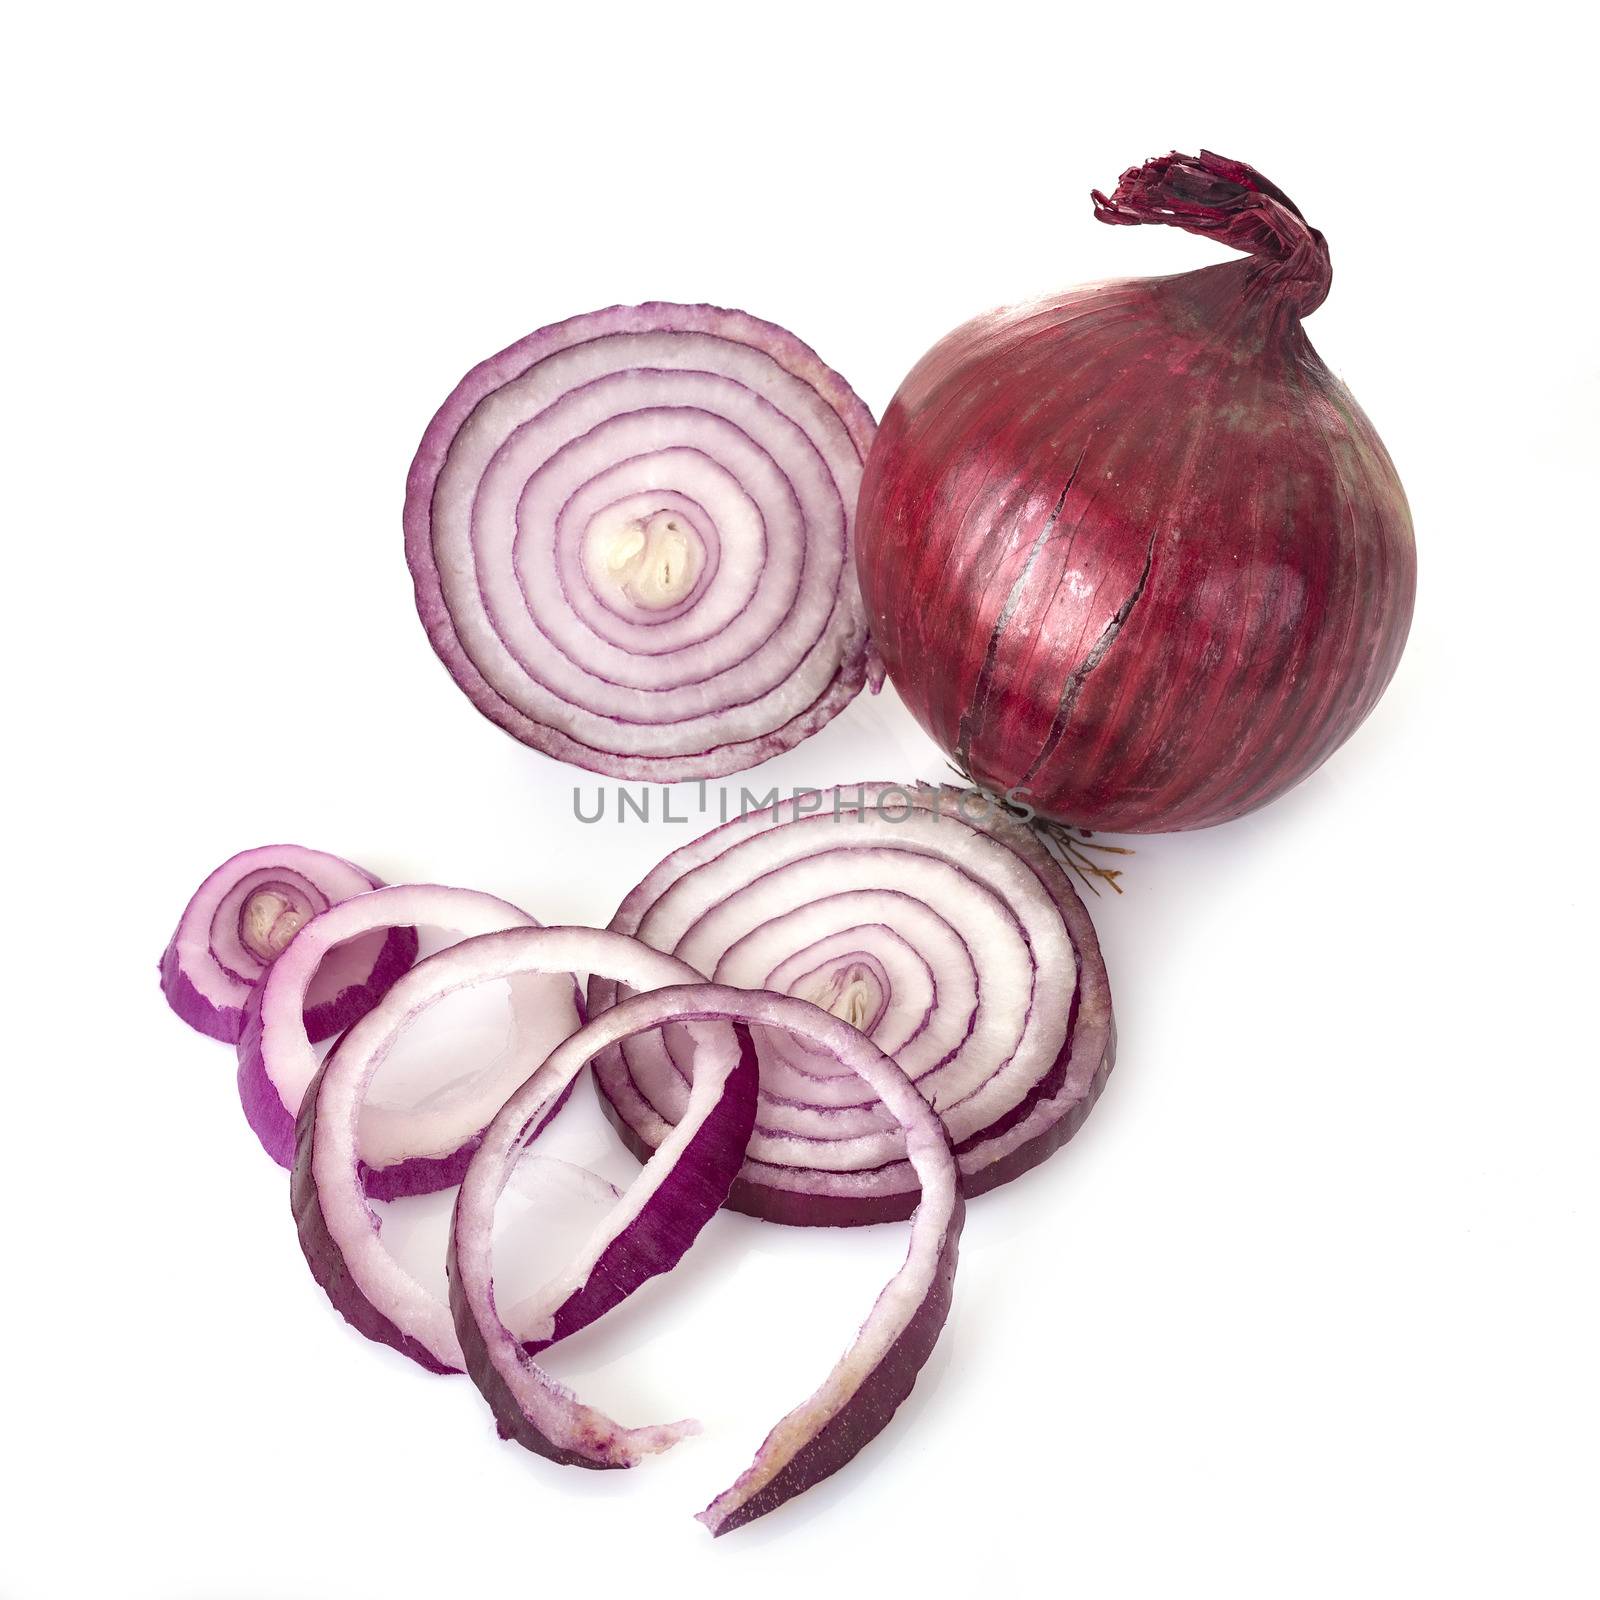 red onion in studio by cynoclub